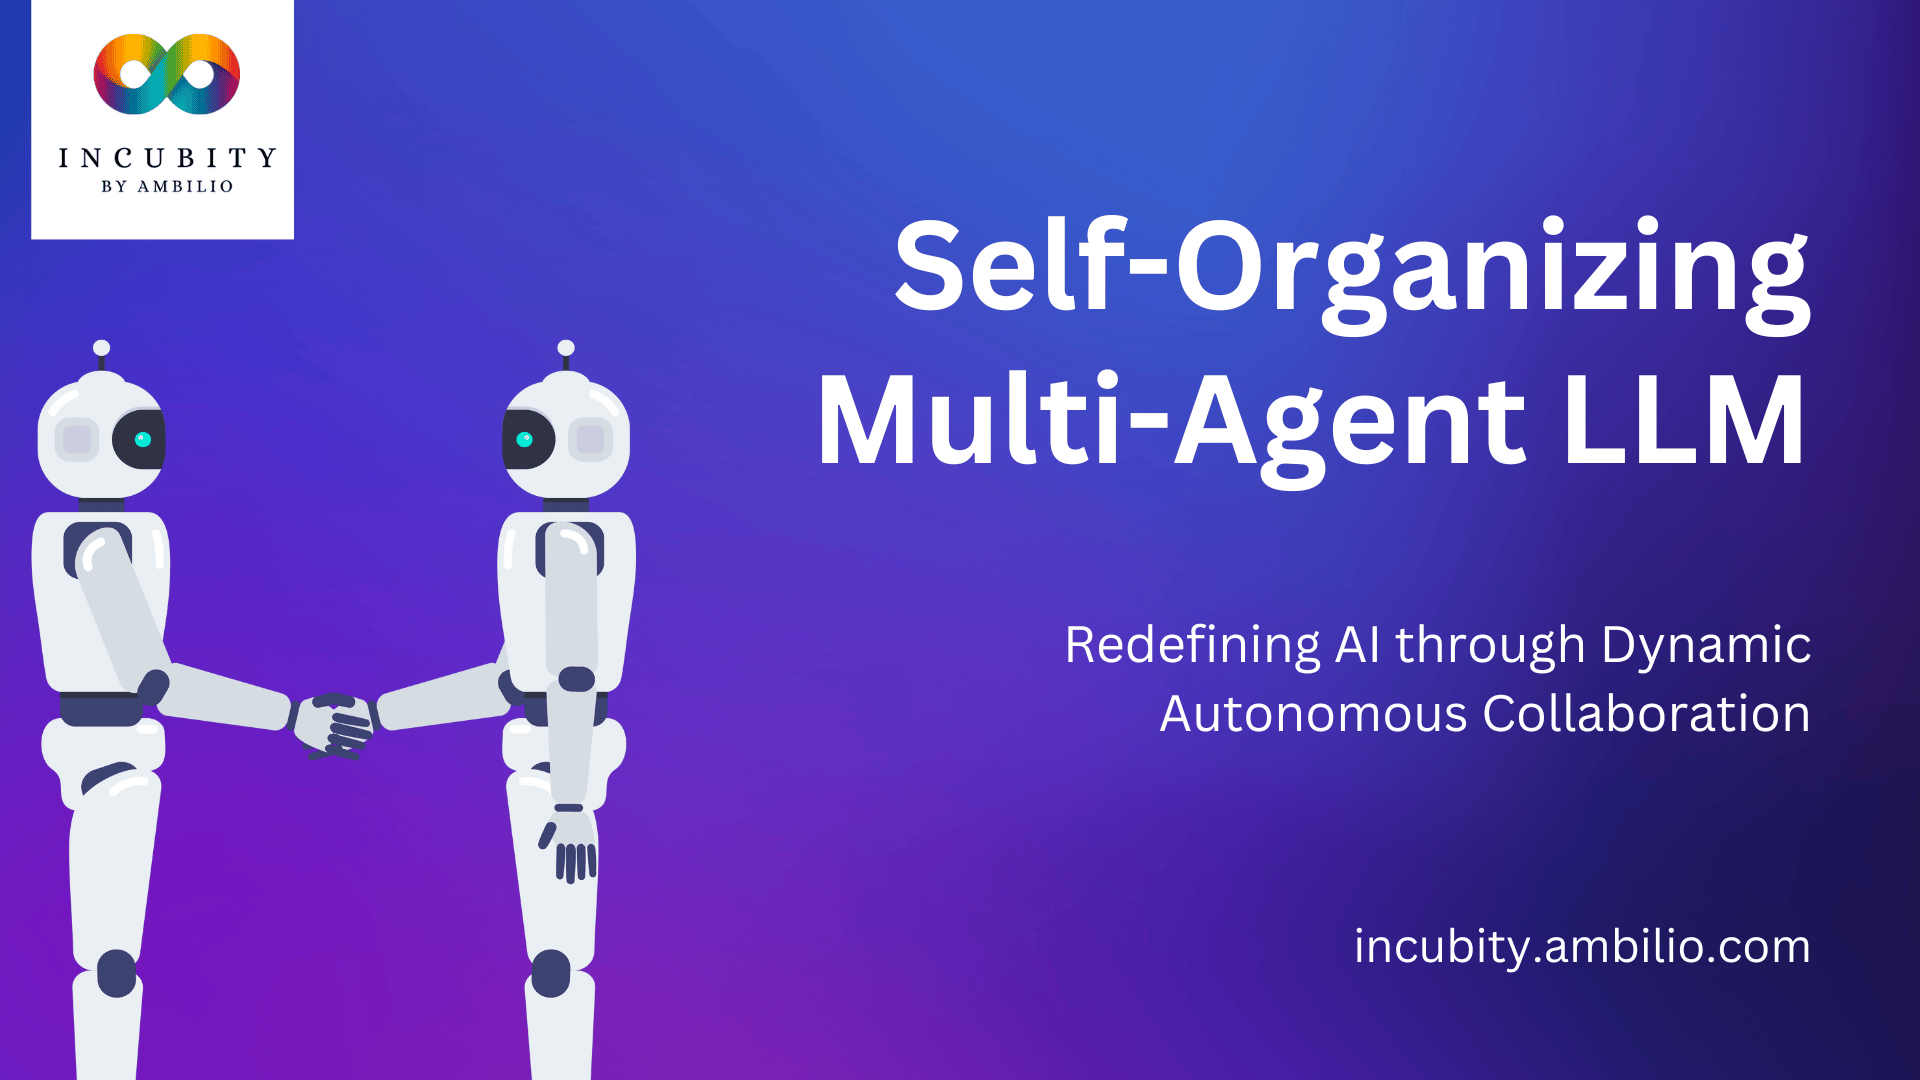 Self-Organizing Multi-Agent LLM